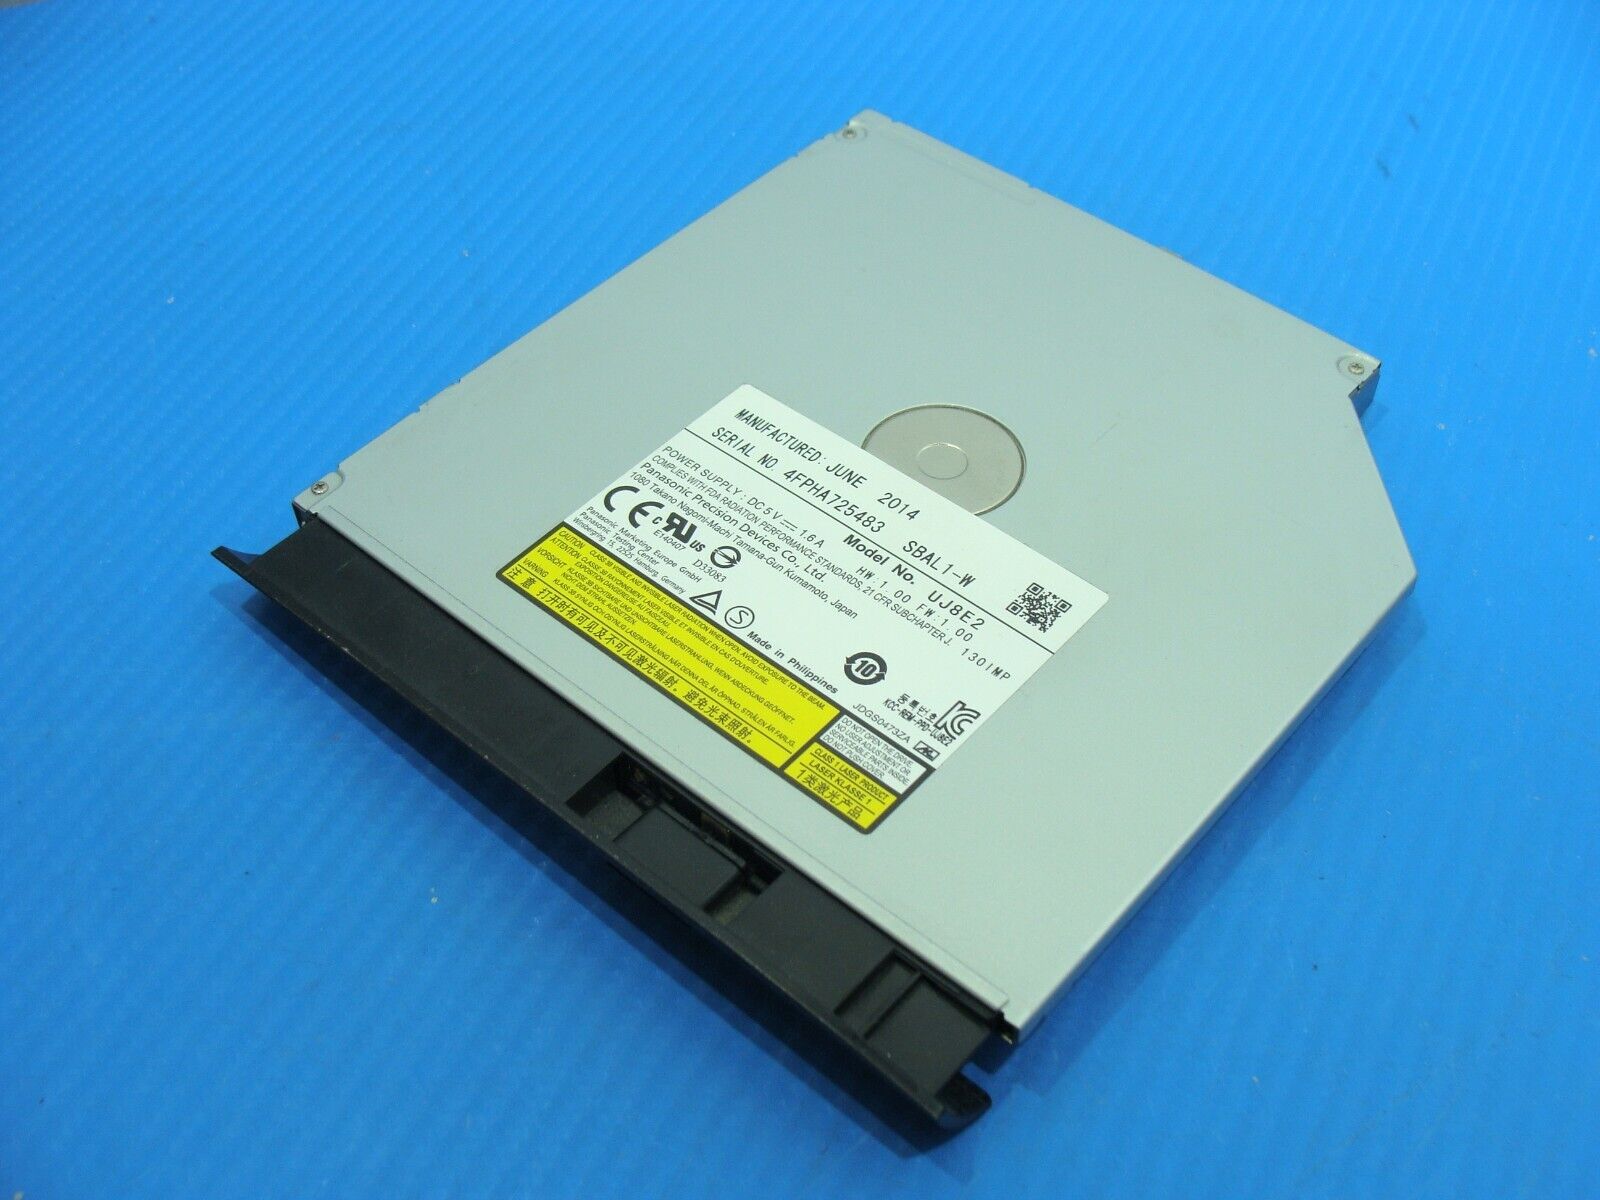 Asus ROG 15.6” GL551JK-EH71 Genuine Laptop DVD-RW Burner Drive UJ8E2 4FPHA725483